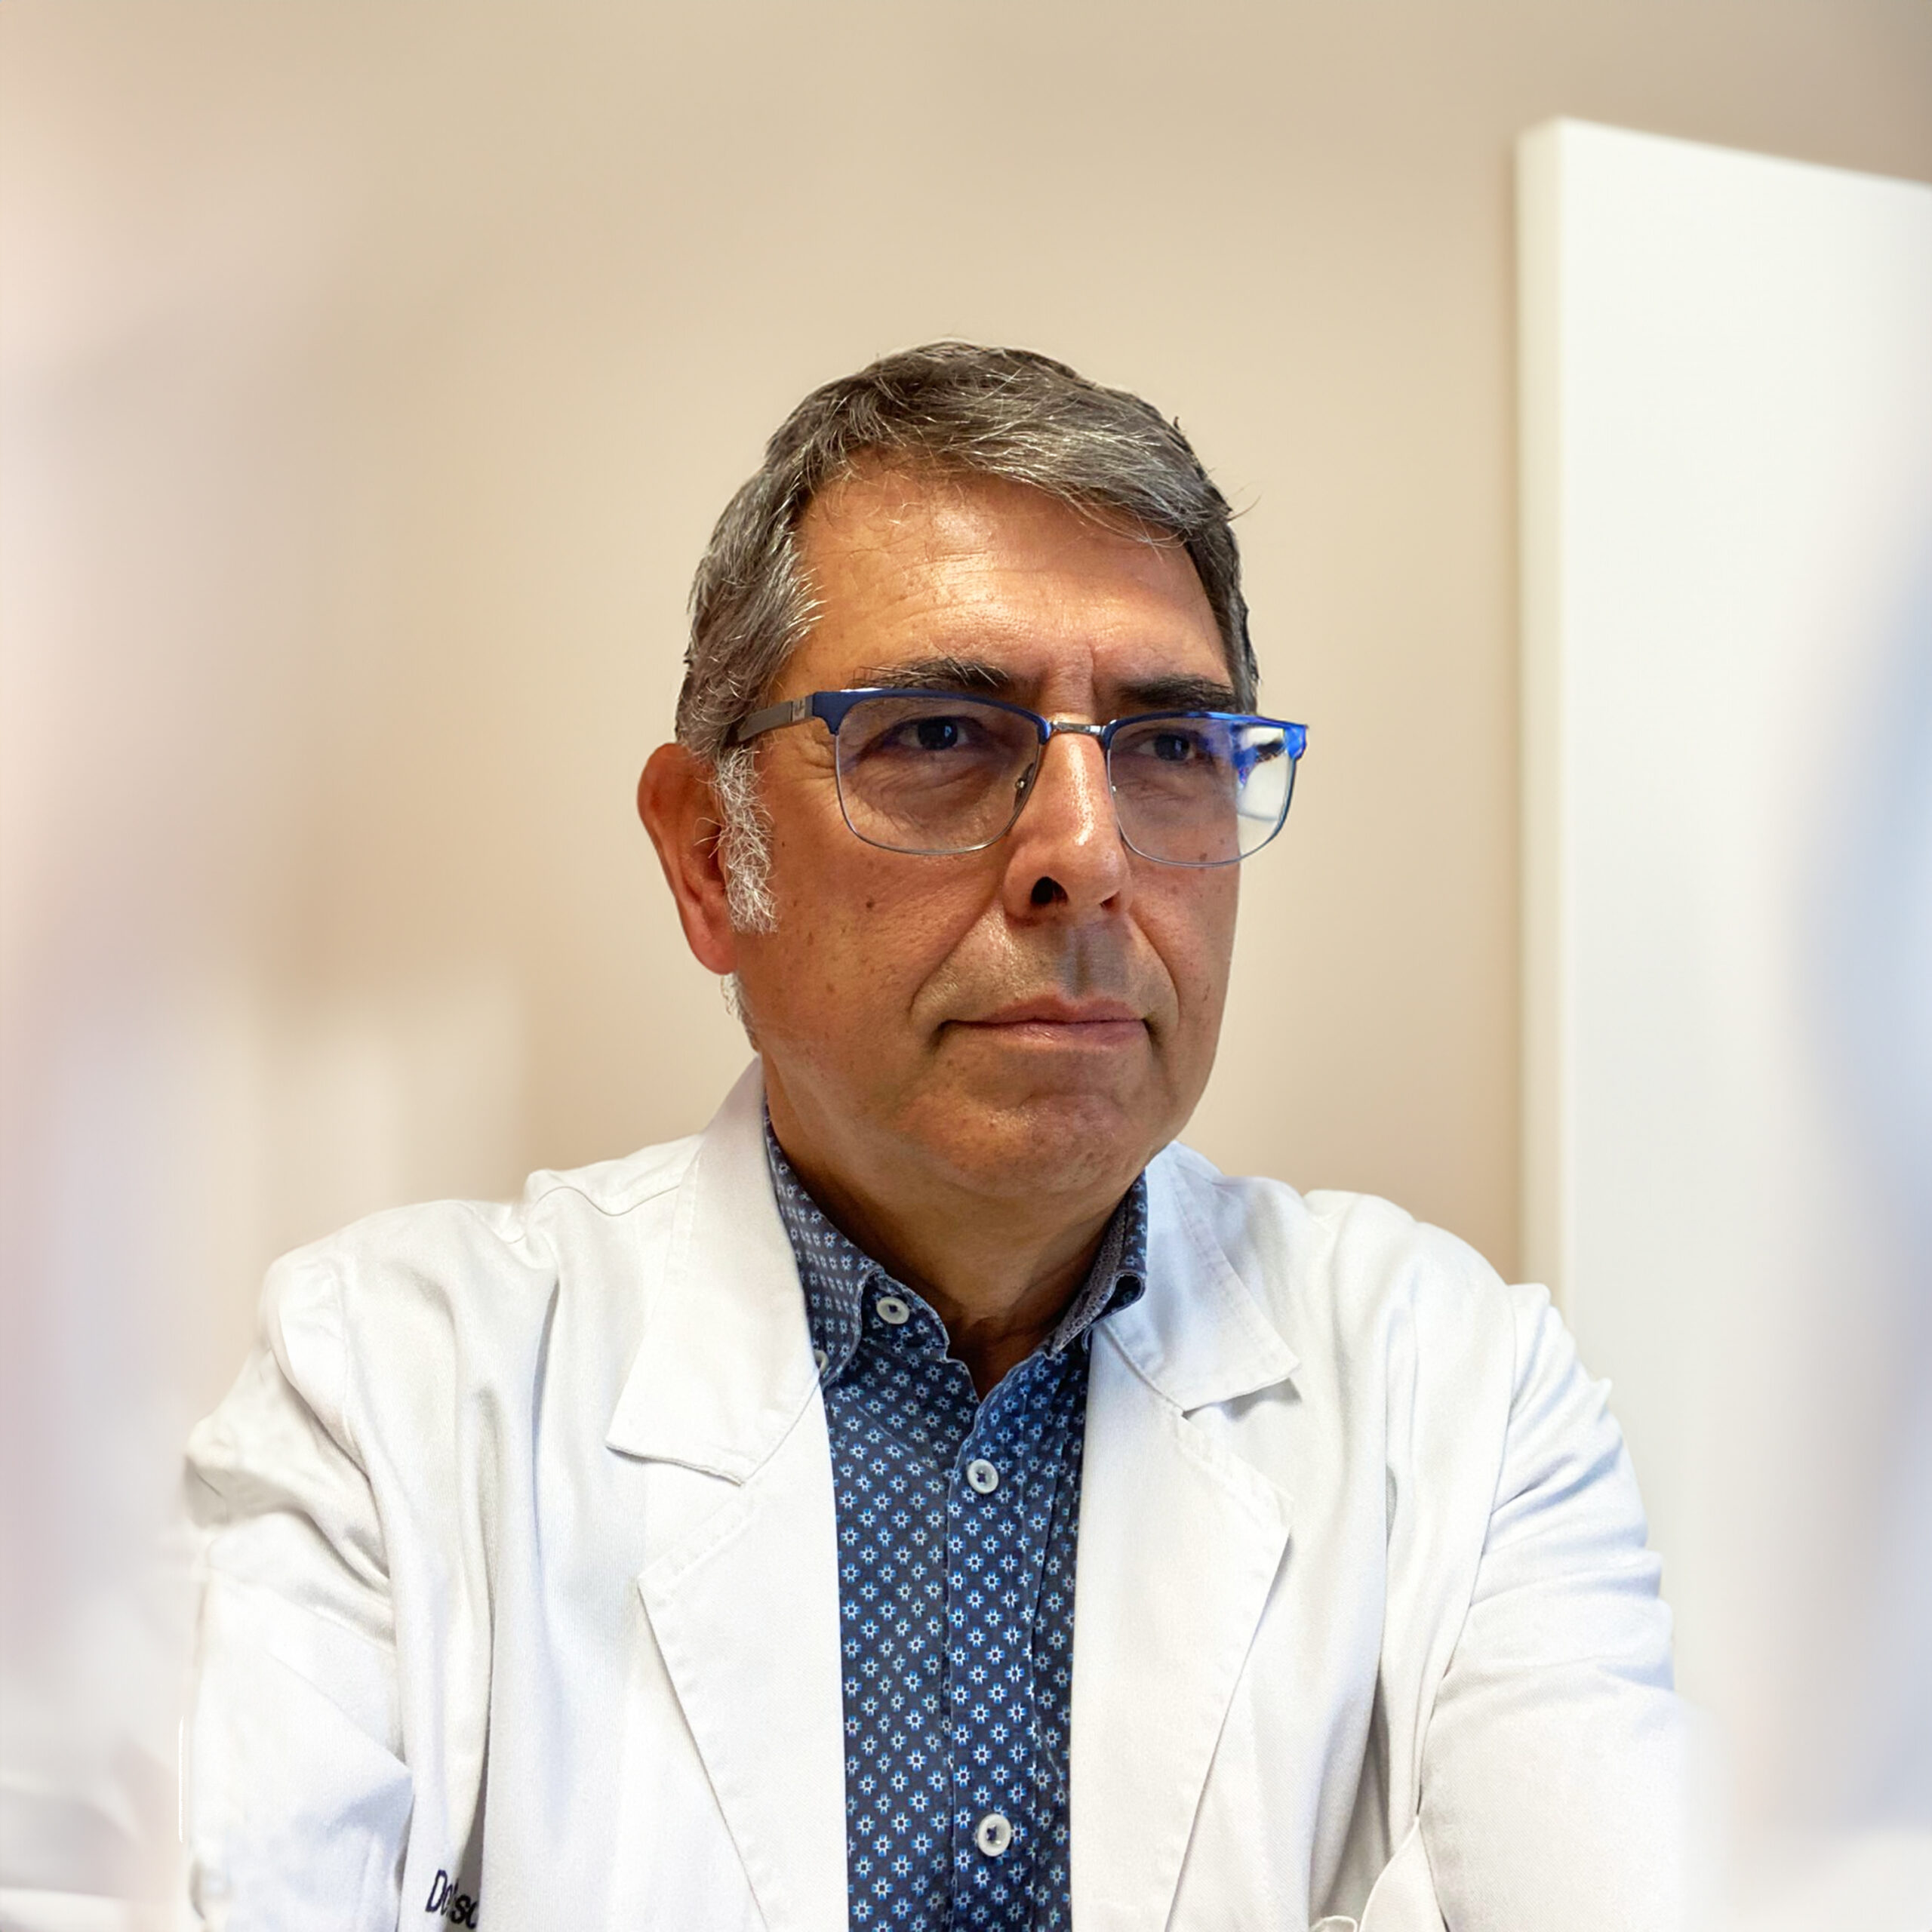 Dott. Giubilato Alfonso Ortopedico Centro Medico Polisalute Cologno Monzese (Milano)